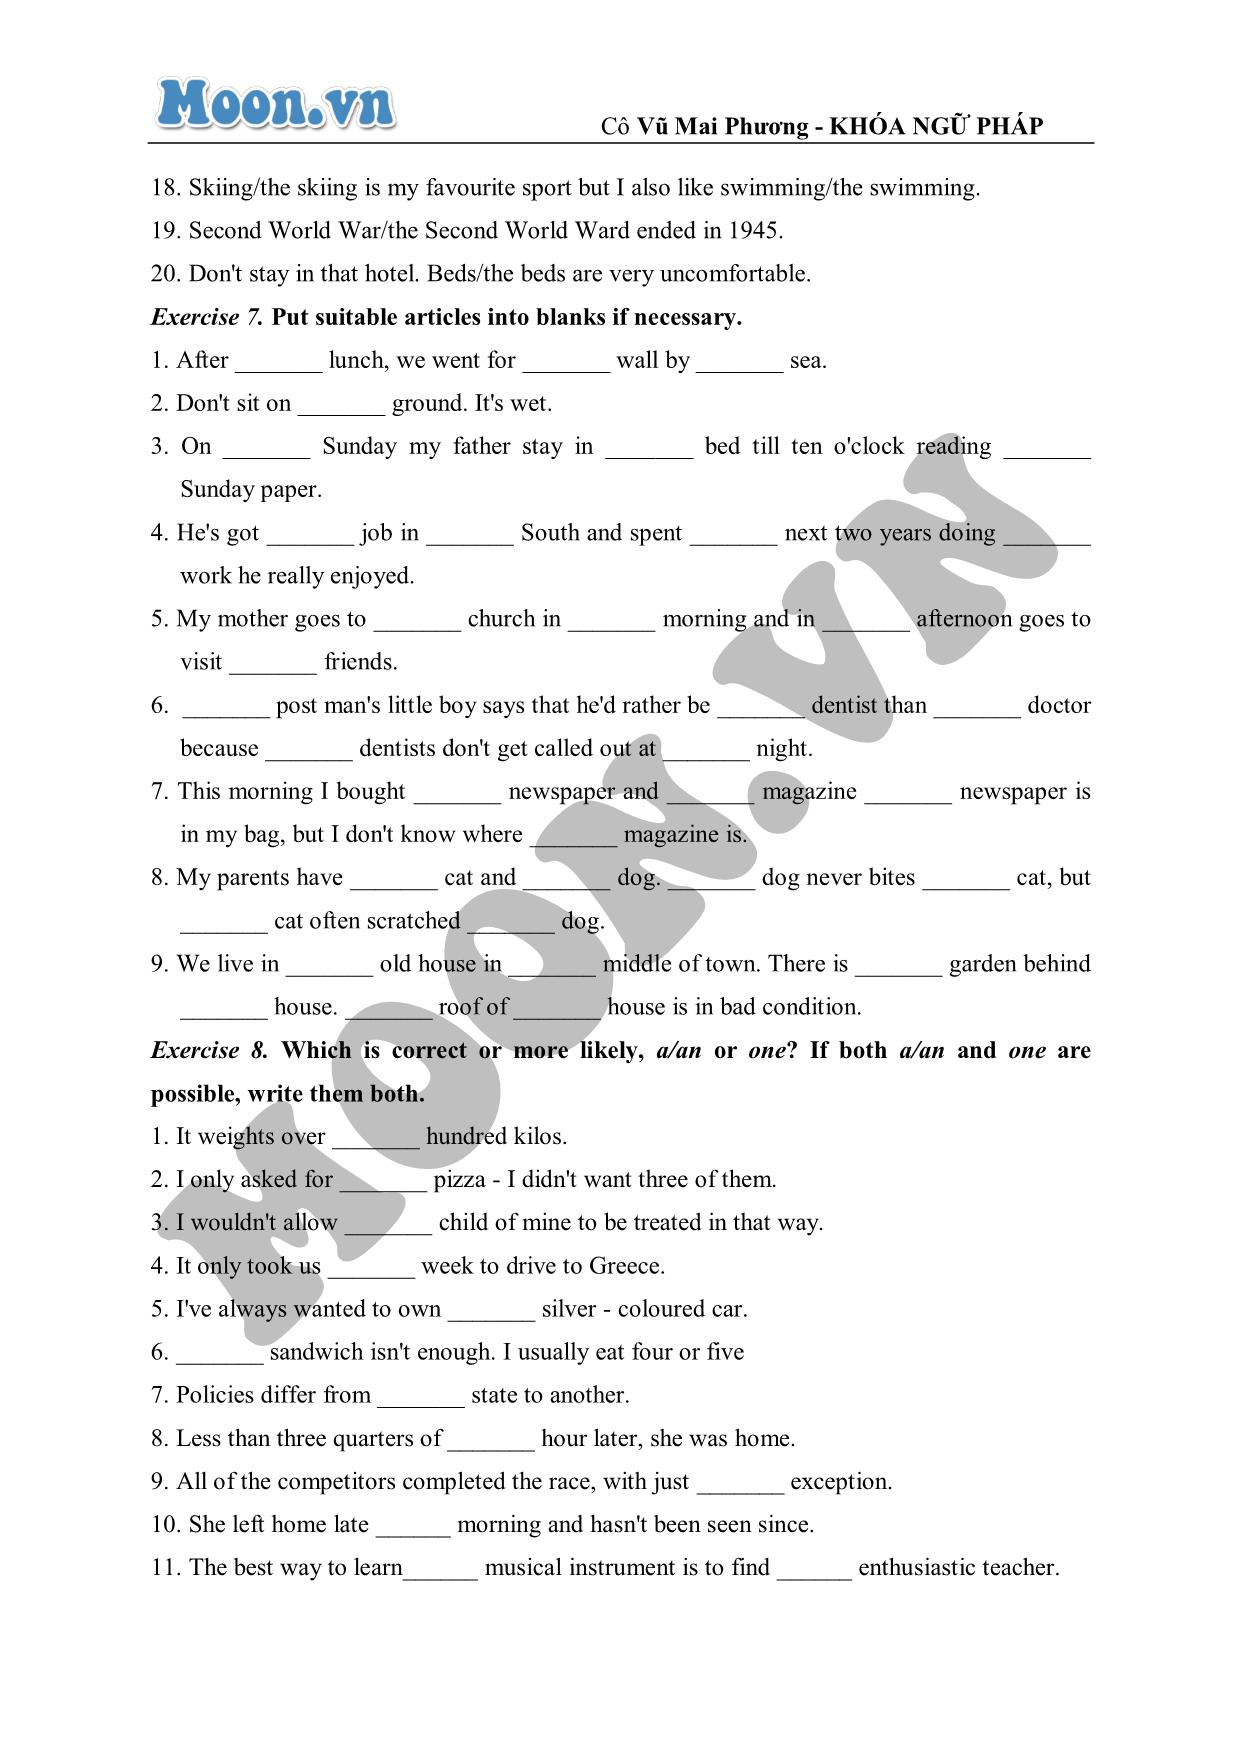 Bài luyện tập nâng cao về mạo từ (exercises) trang 4